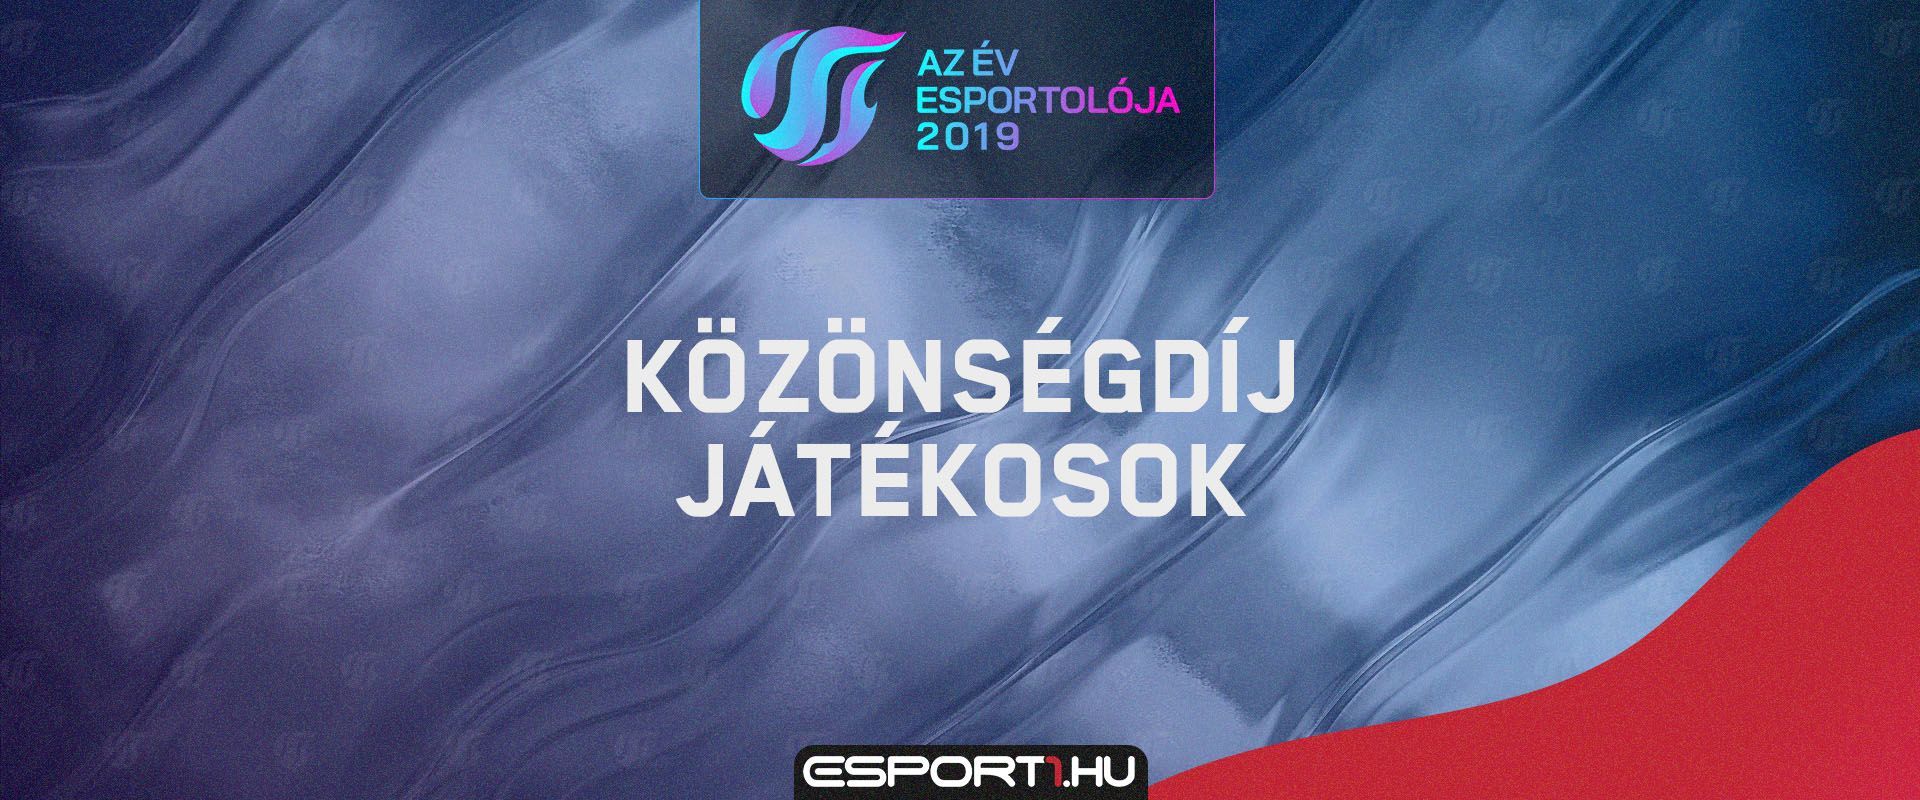 Az Év Esportolója 2019 - Közönségdíj: Szavazz kedvenc e-sport játékosodra!